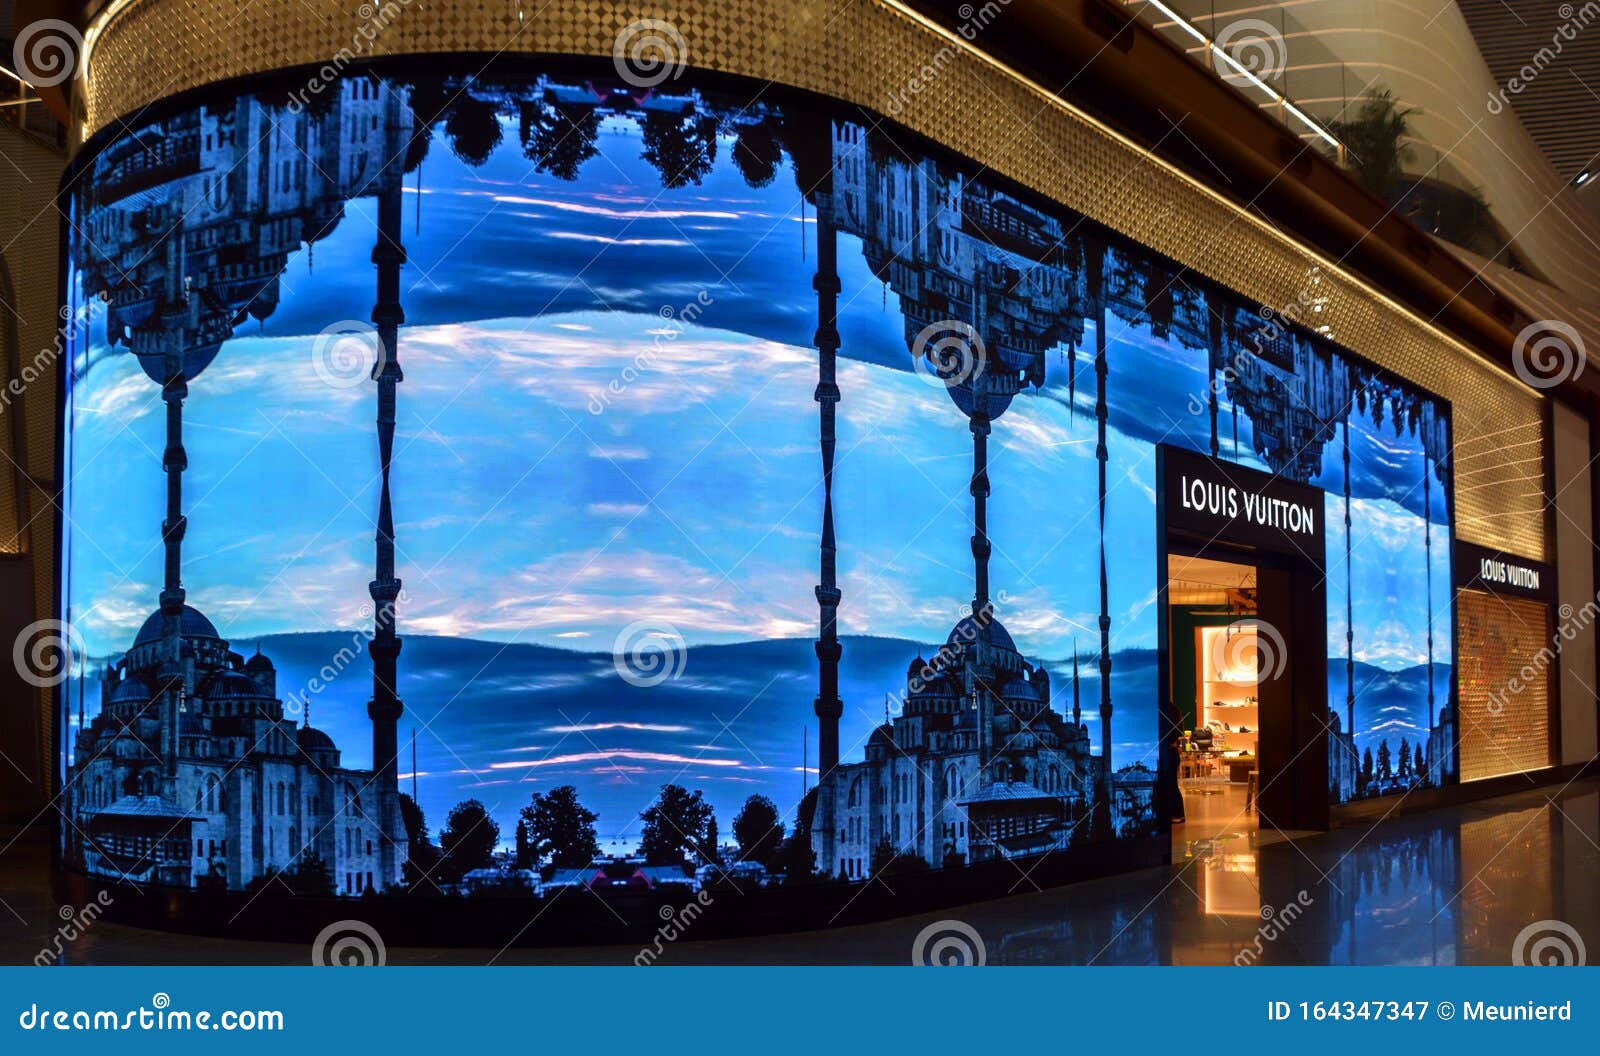 Louis Vuitton Istanbul Havalimani store, Turkey